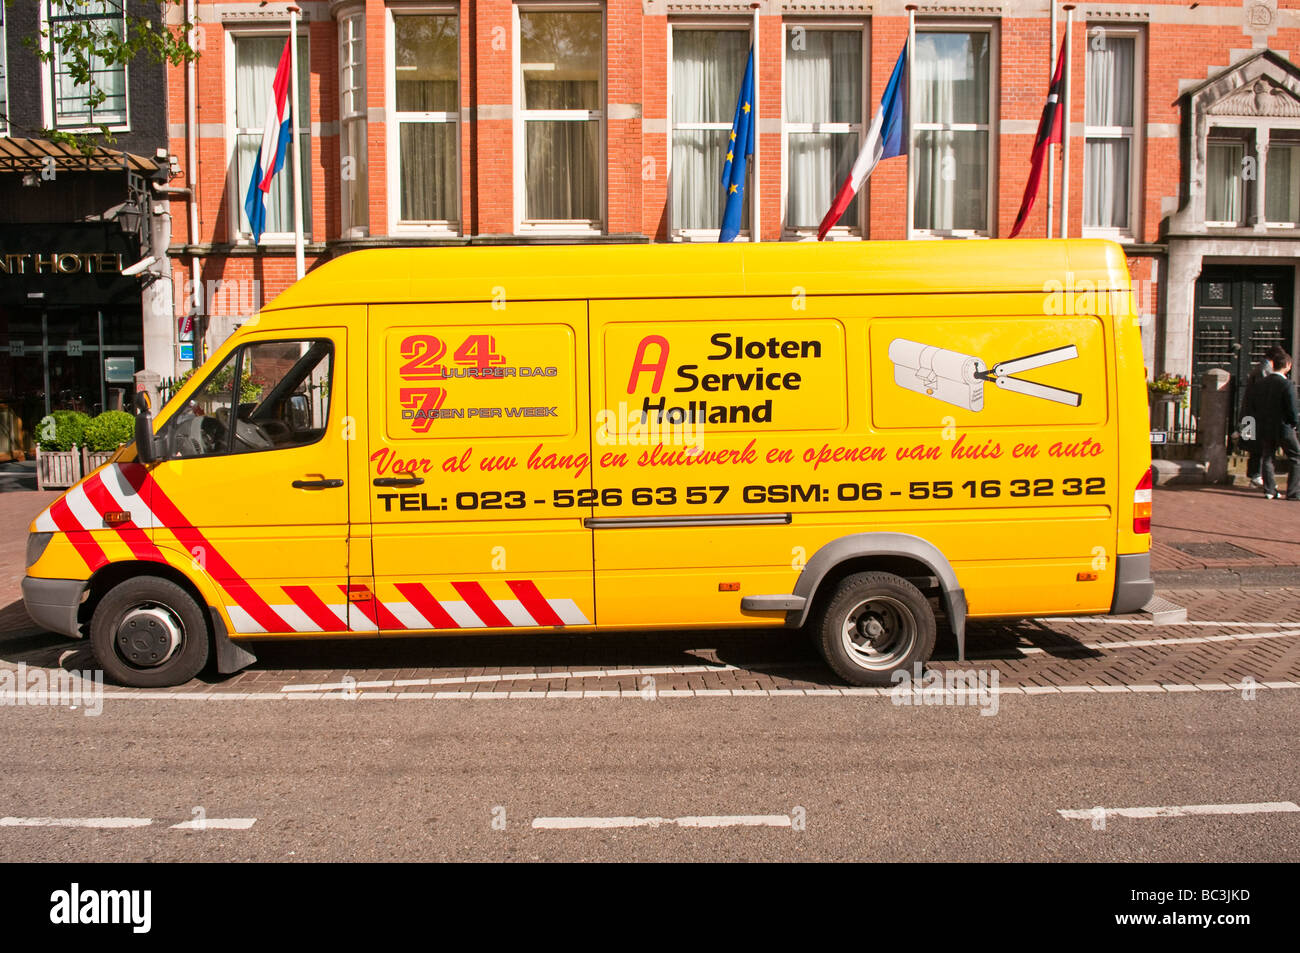 Schlosser-van vor einem Hotel in Amsterdam Stockfoto